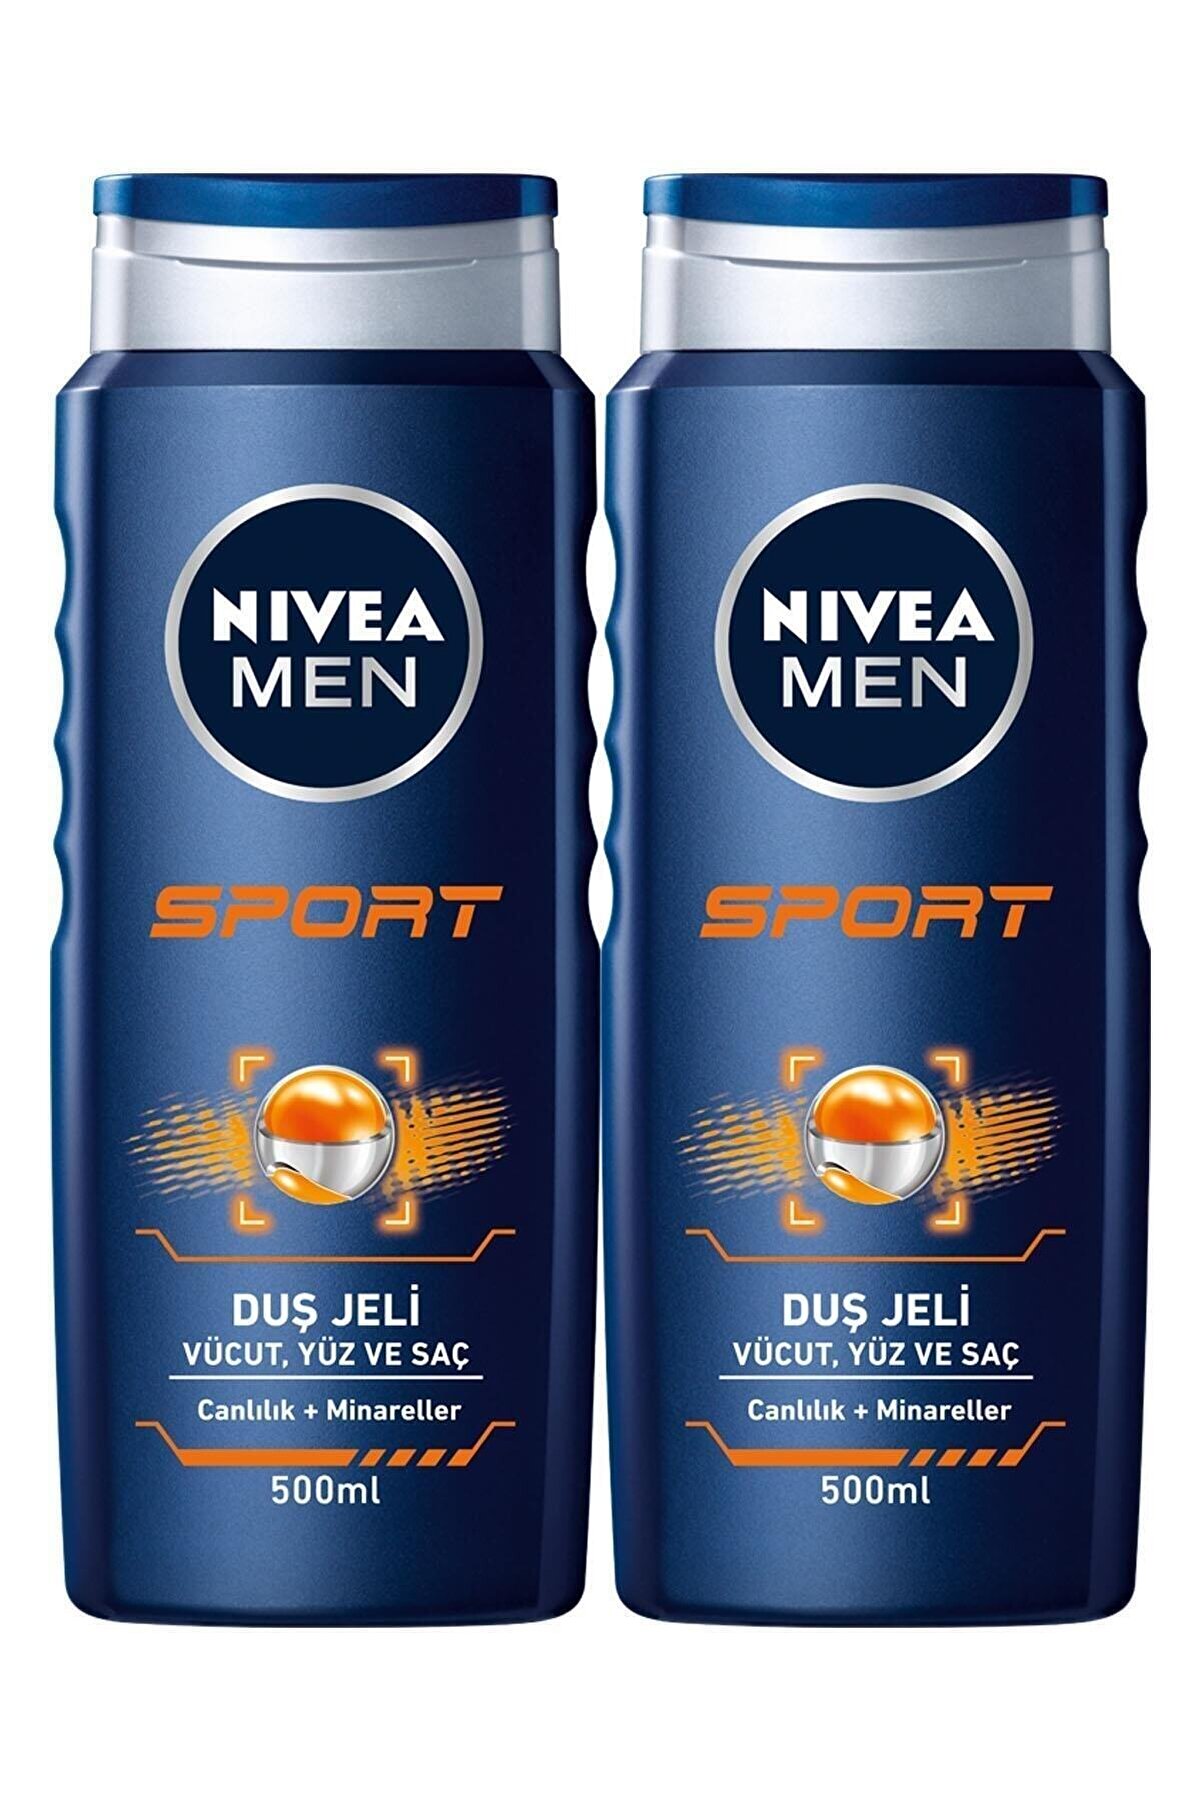 NIVEA MEN Erkek Duş Jeli Sport 500 ml X2,Yüz,Vücut ve Saç için, Gün Boyu Ferah&Etkili Koku